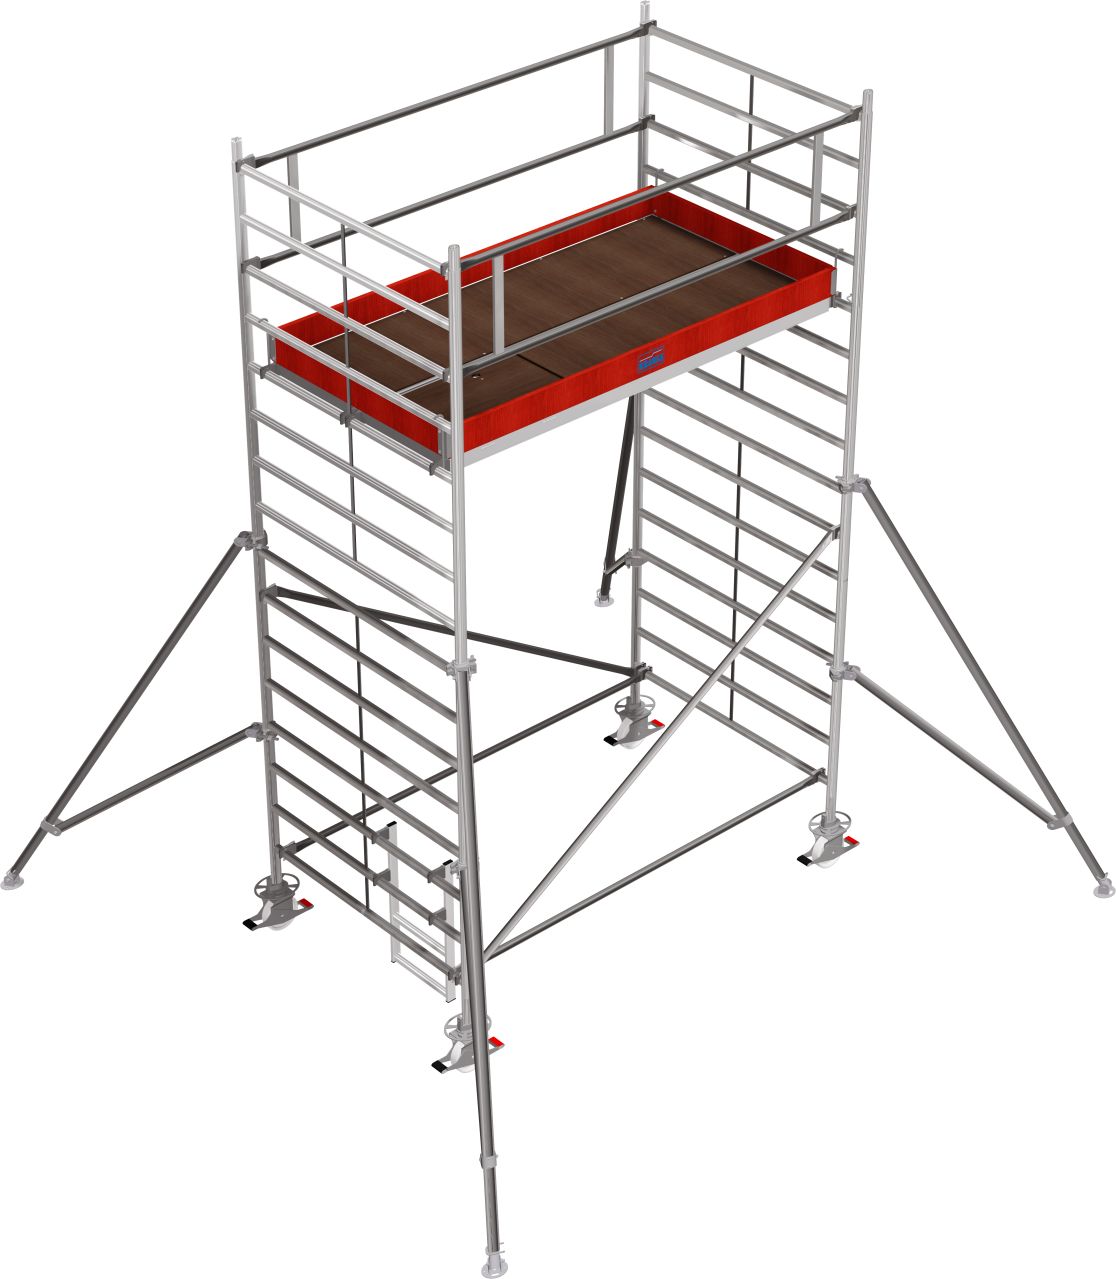 Дополнительное изображение Stabilo 5000 рабочая высота 5,2 м, размер площадки (2.5x1.5 м)